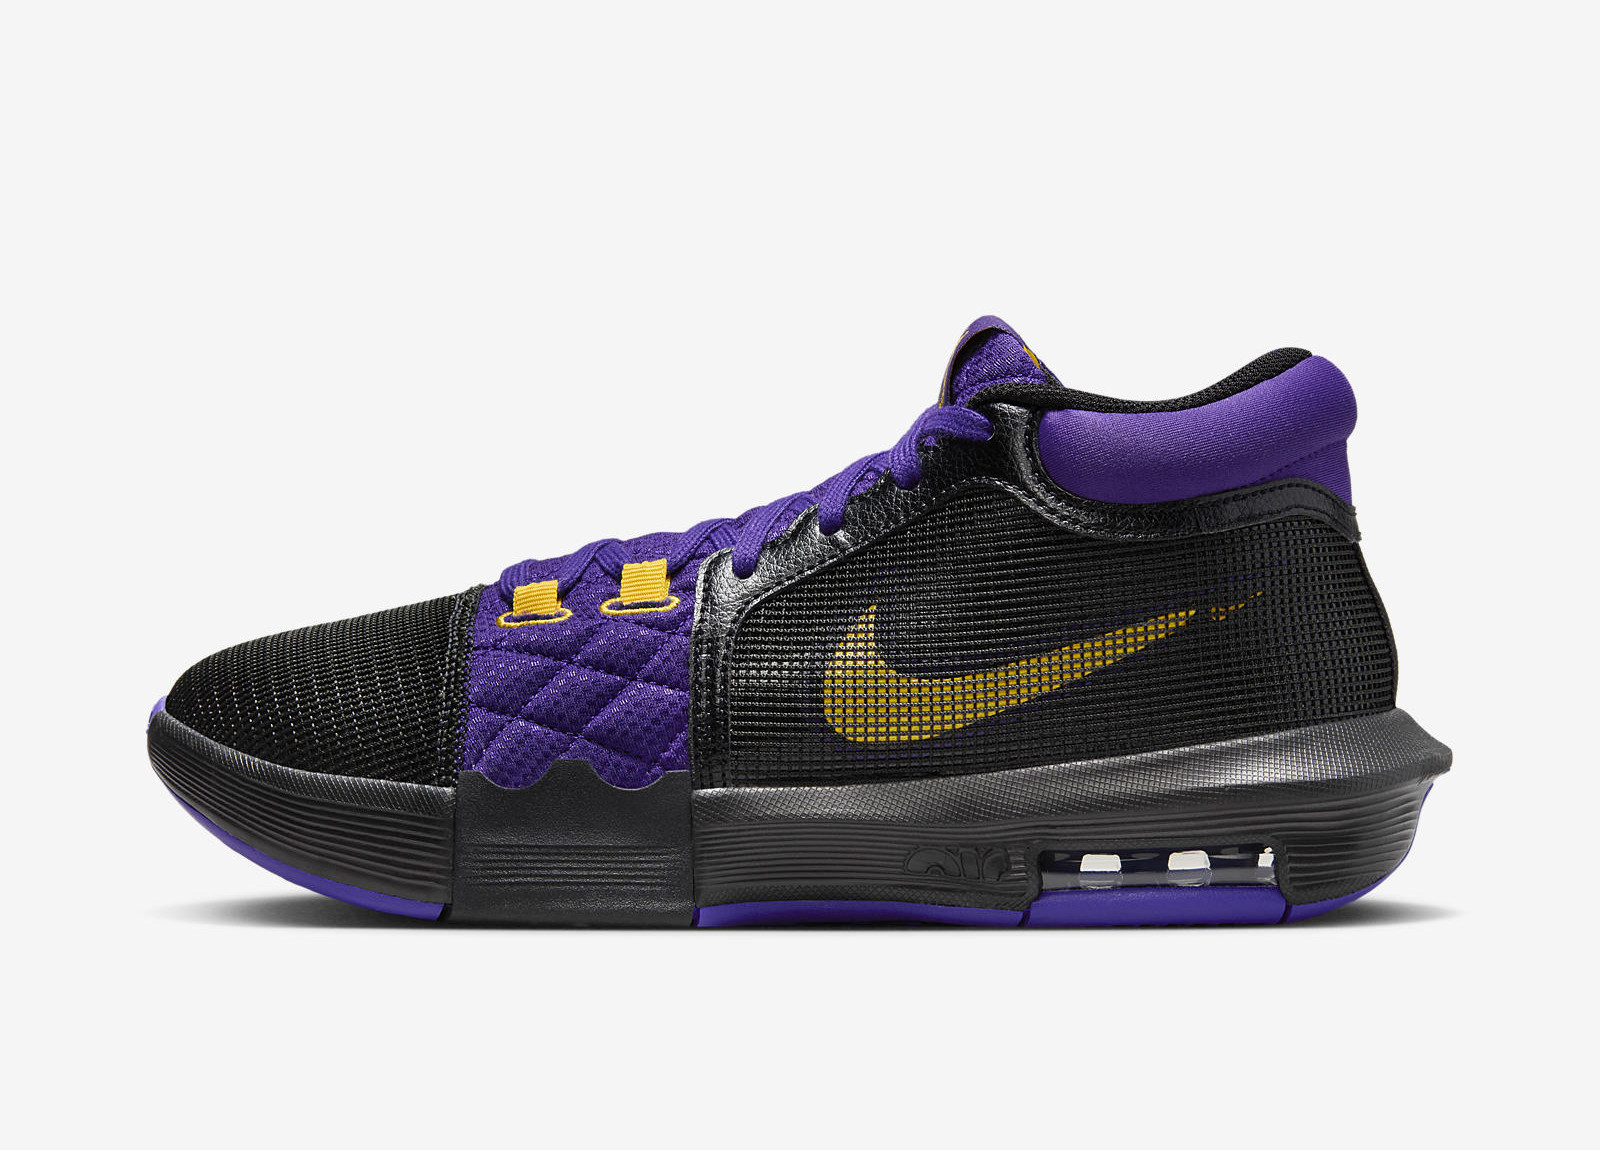 Nike LeBron Witness 8
« Fiery Purple »